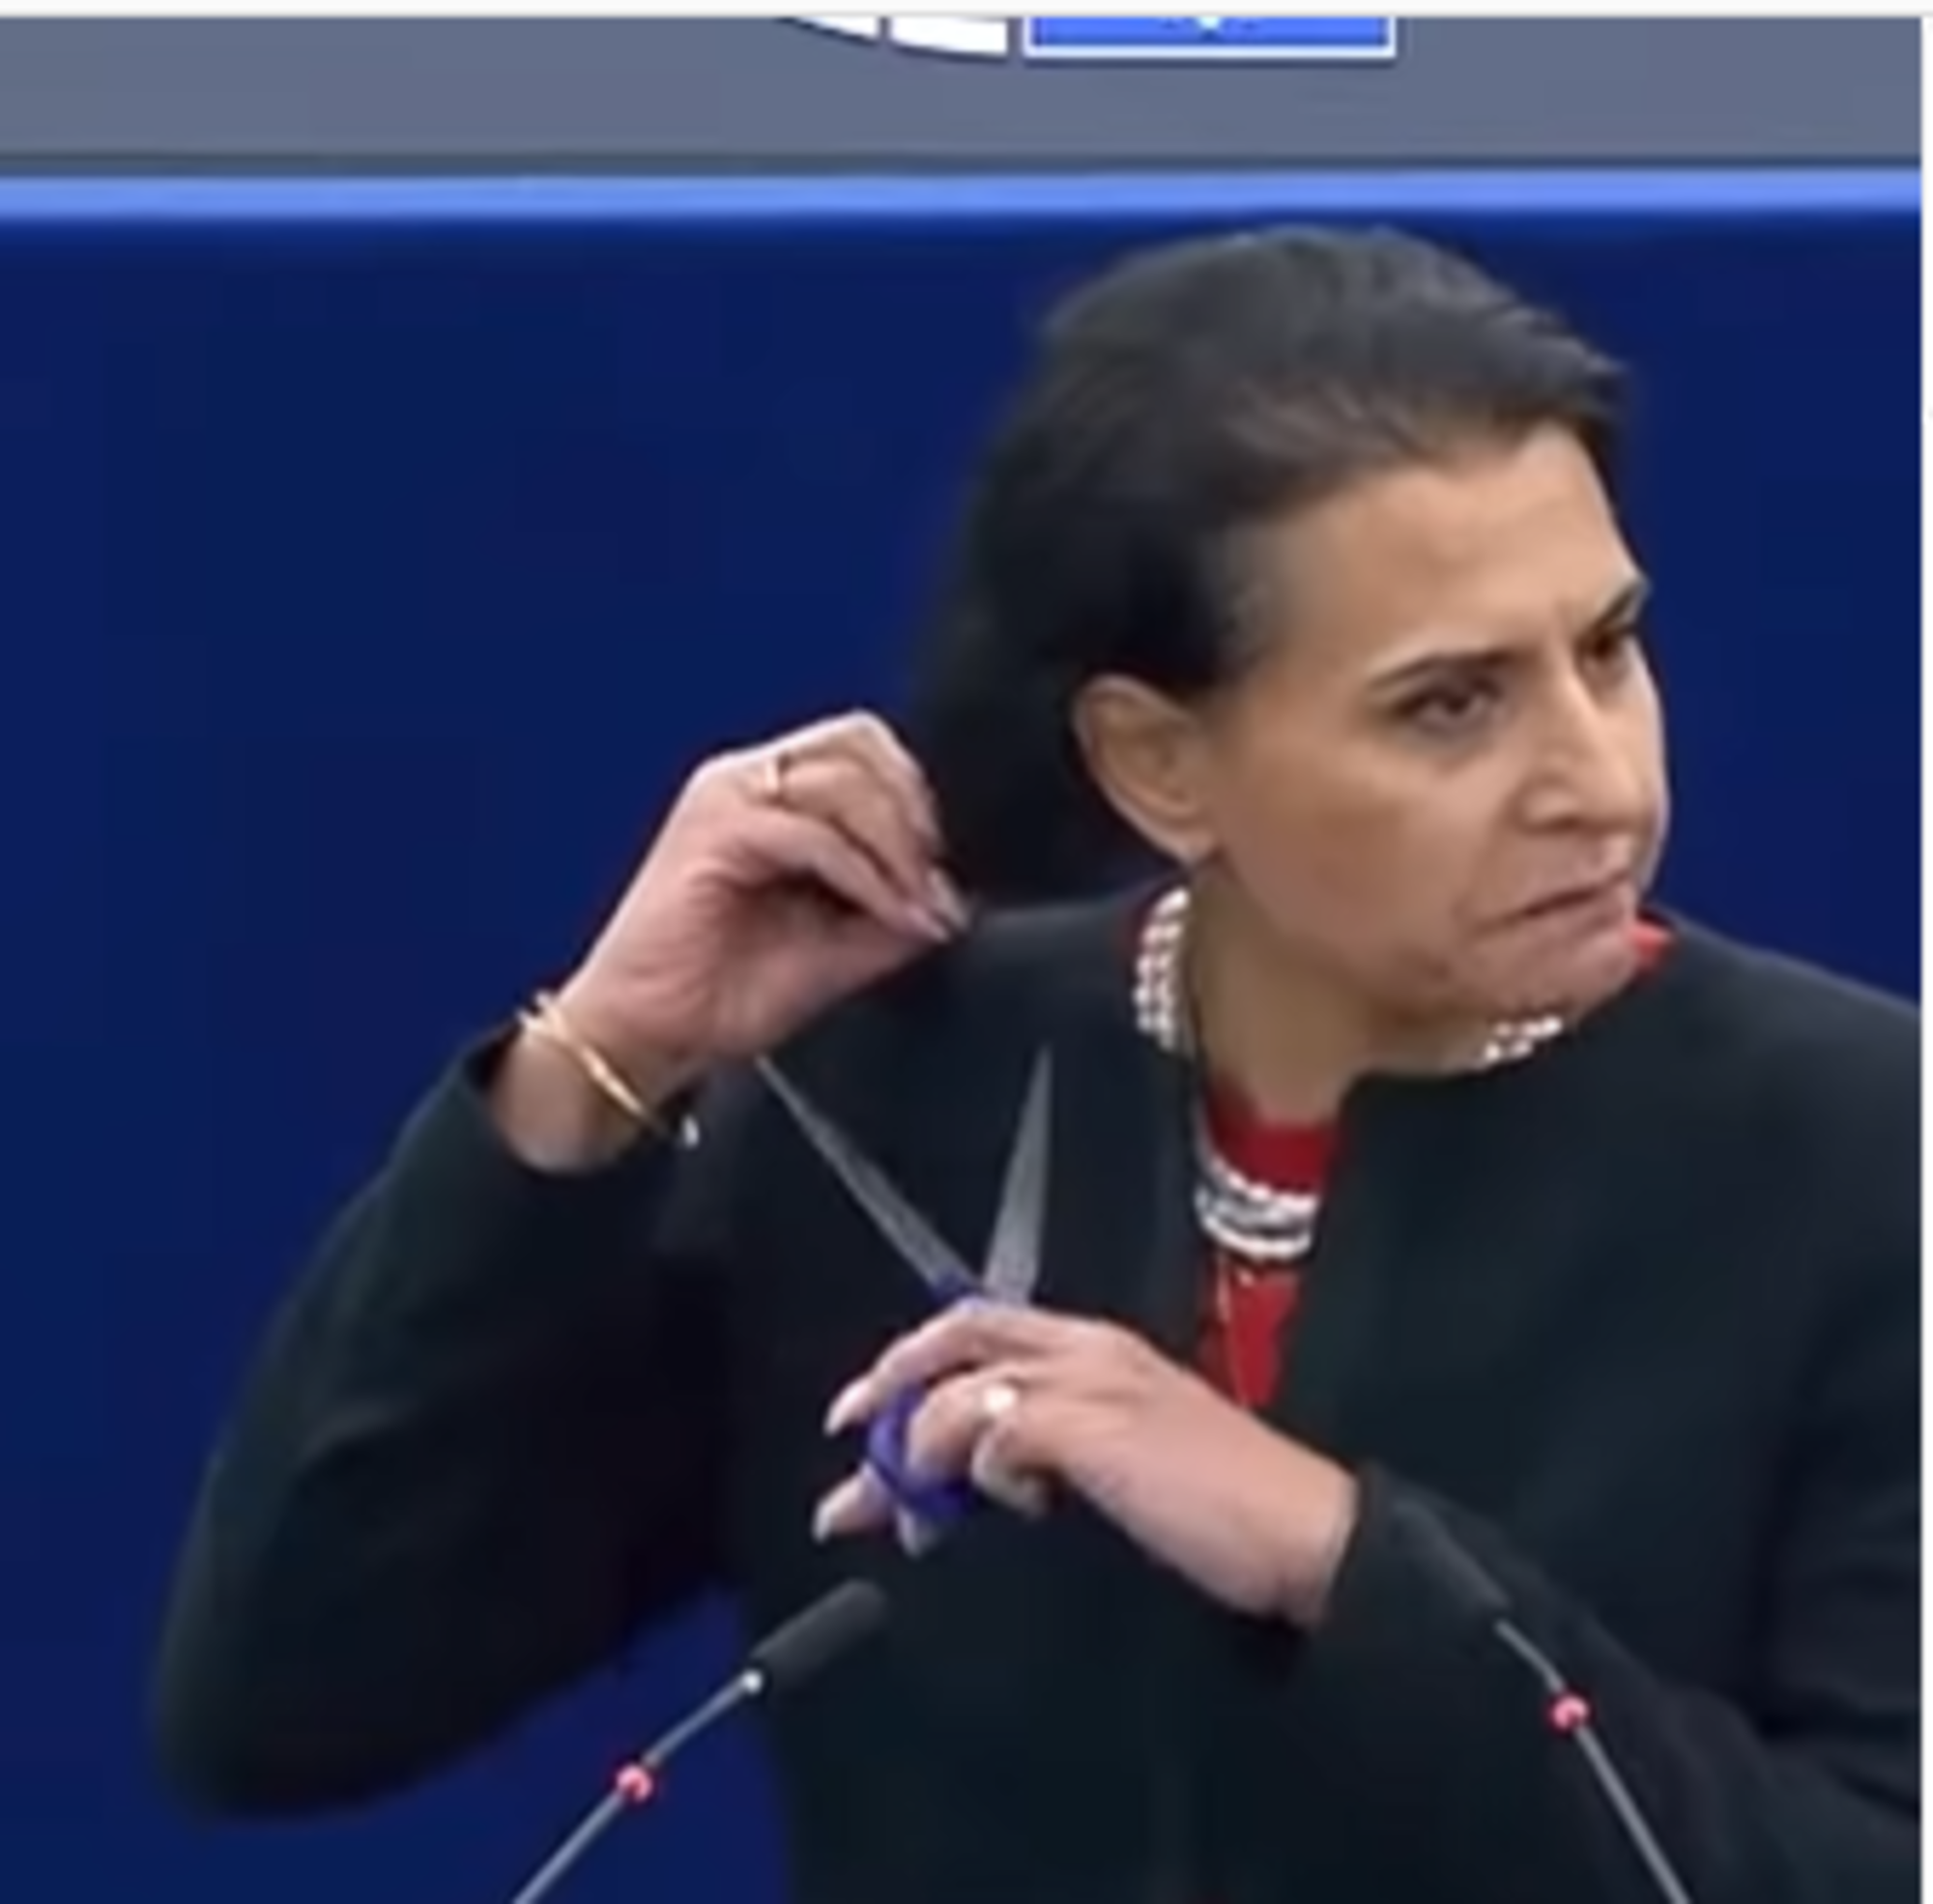 Una eurodiputada se corta el pelo en el Parlamento Europeo en apoyo a las mujeres de Irán